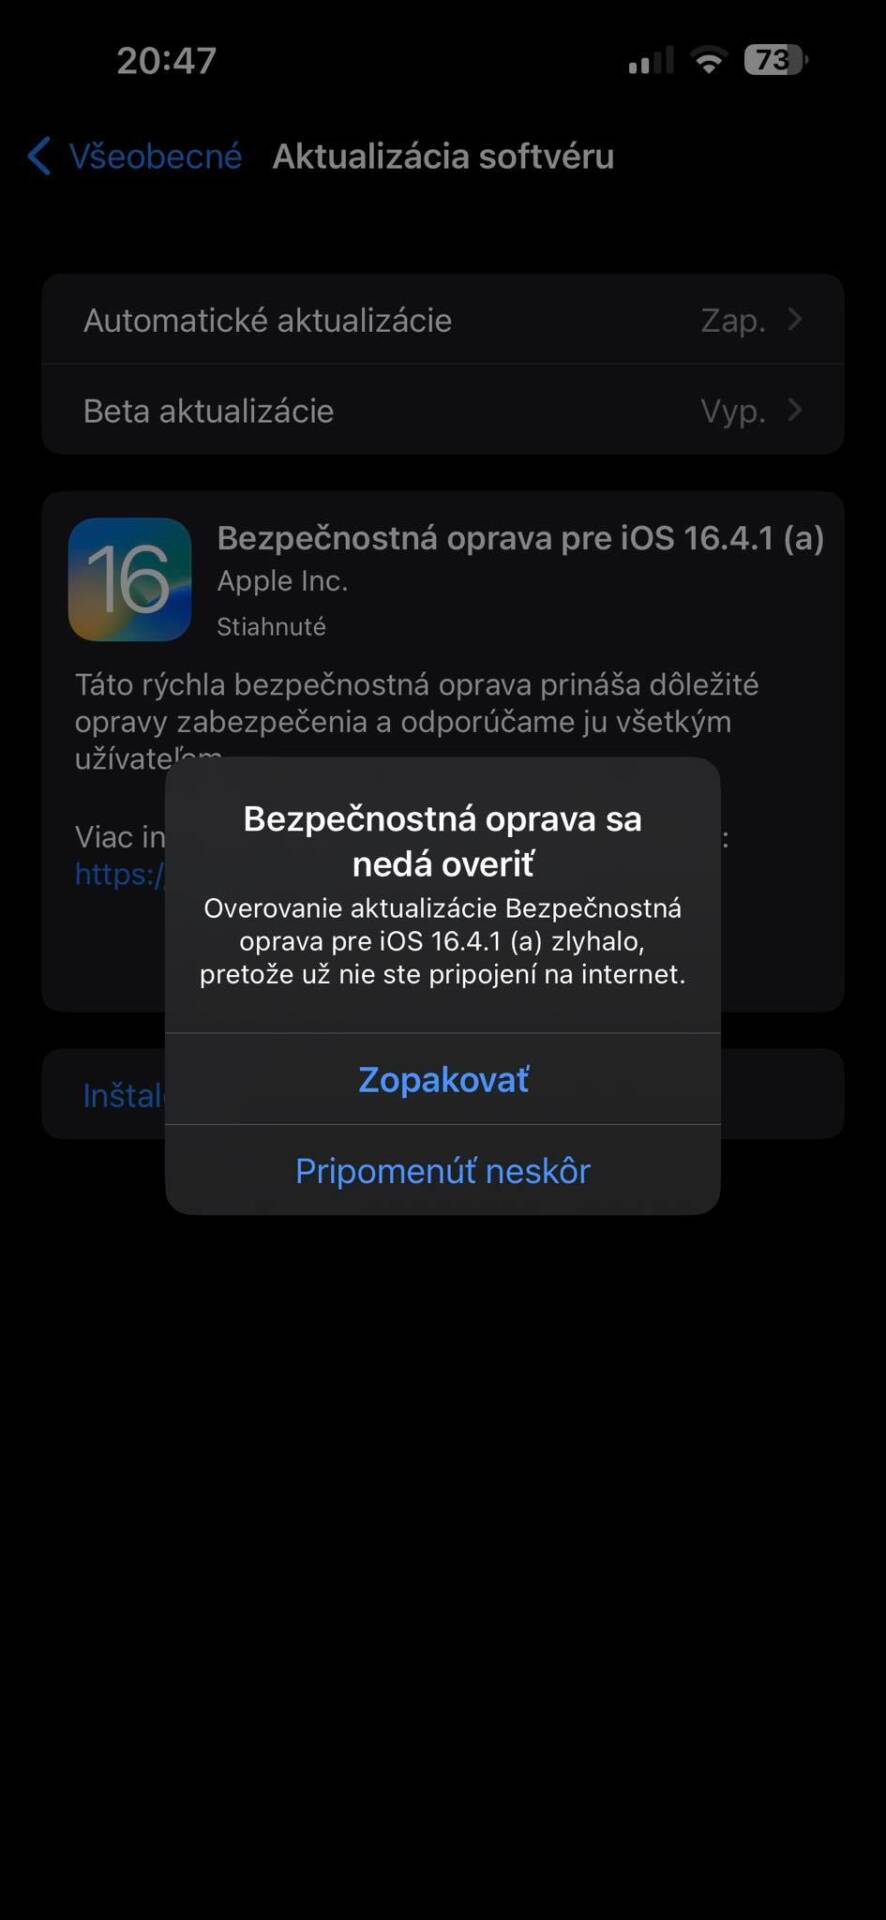 iOS 16.4.1 (a)